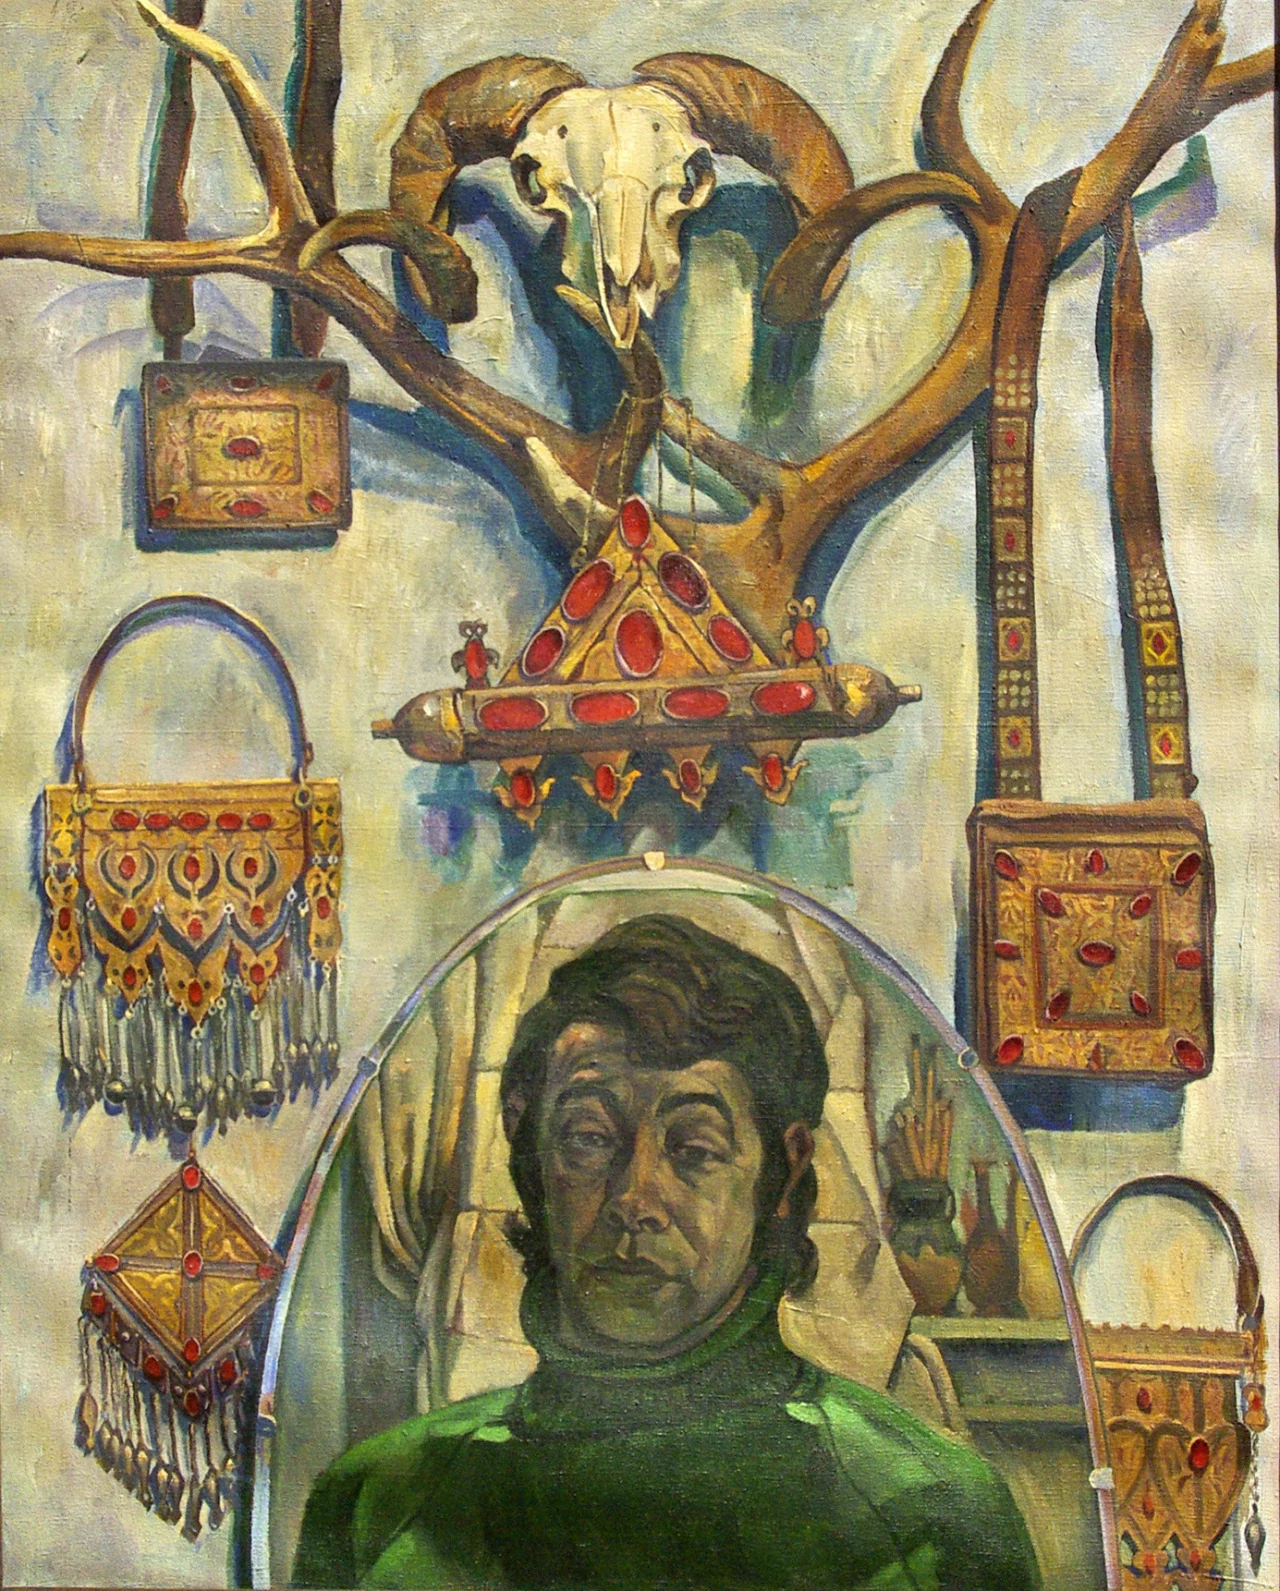 Turkmen Decorations and Self-Portrait, Durdy Bayramov